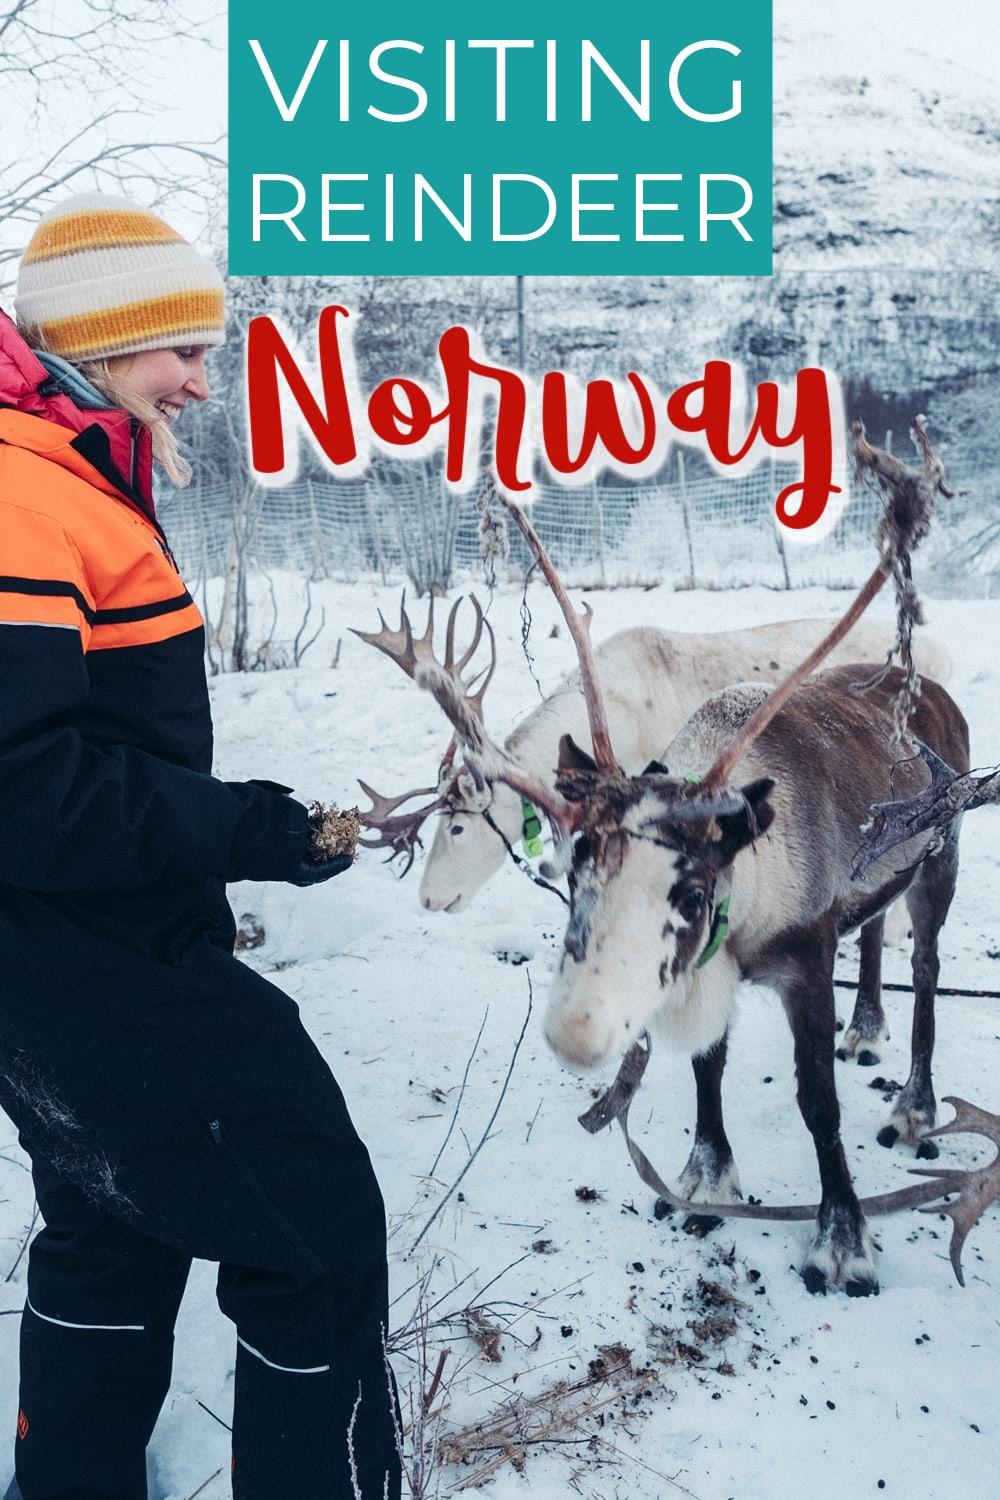 Reindeer sledding and feeding reindeer in Tromsø, Norway